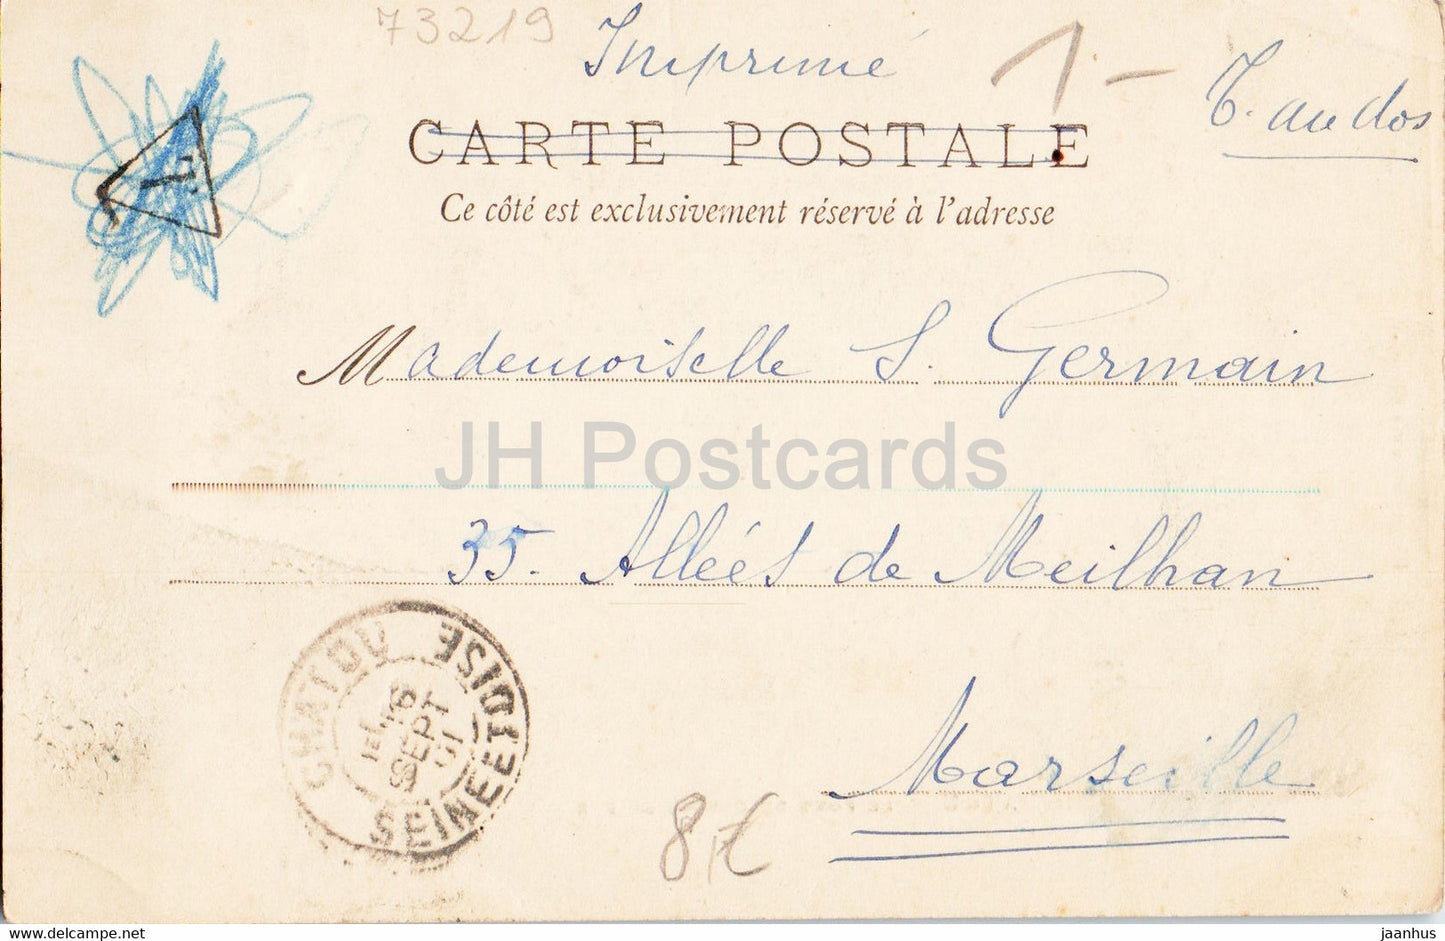 Chatou - Le Pont du Chemin de Fer - railway bridge - train - old postcard - 1901 - France - used